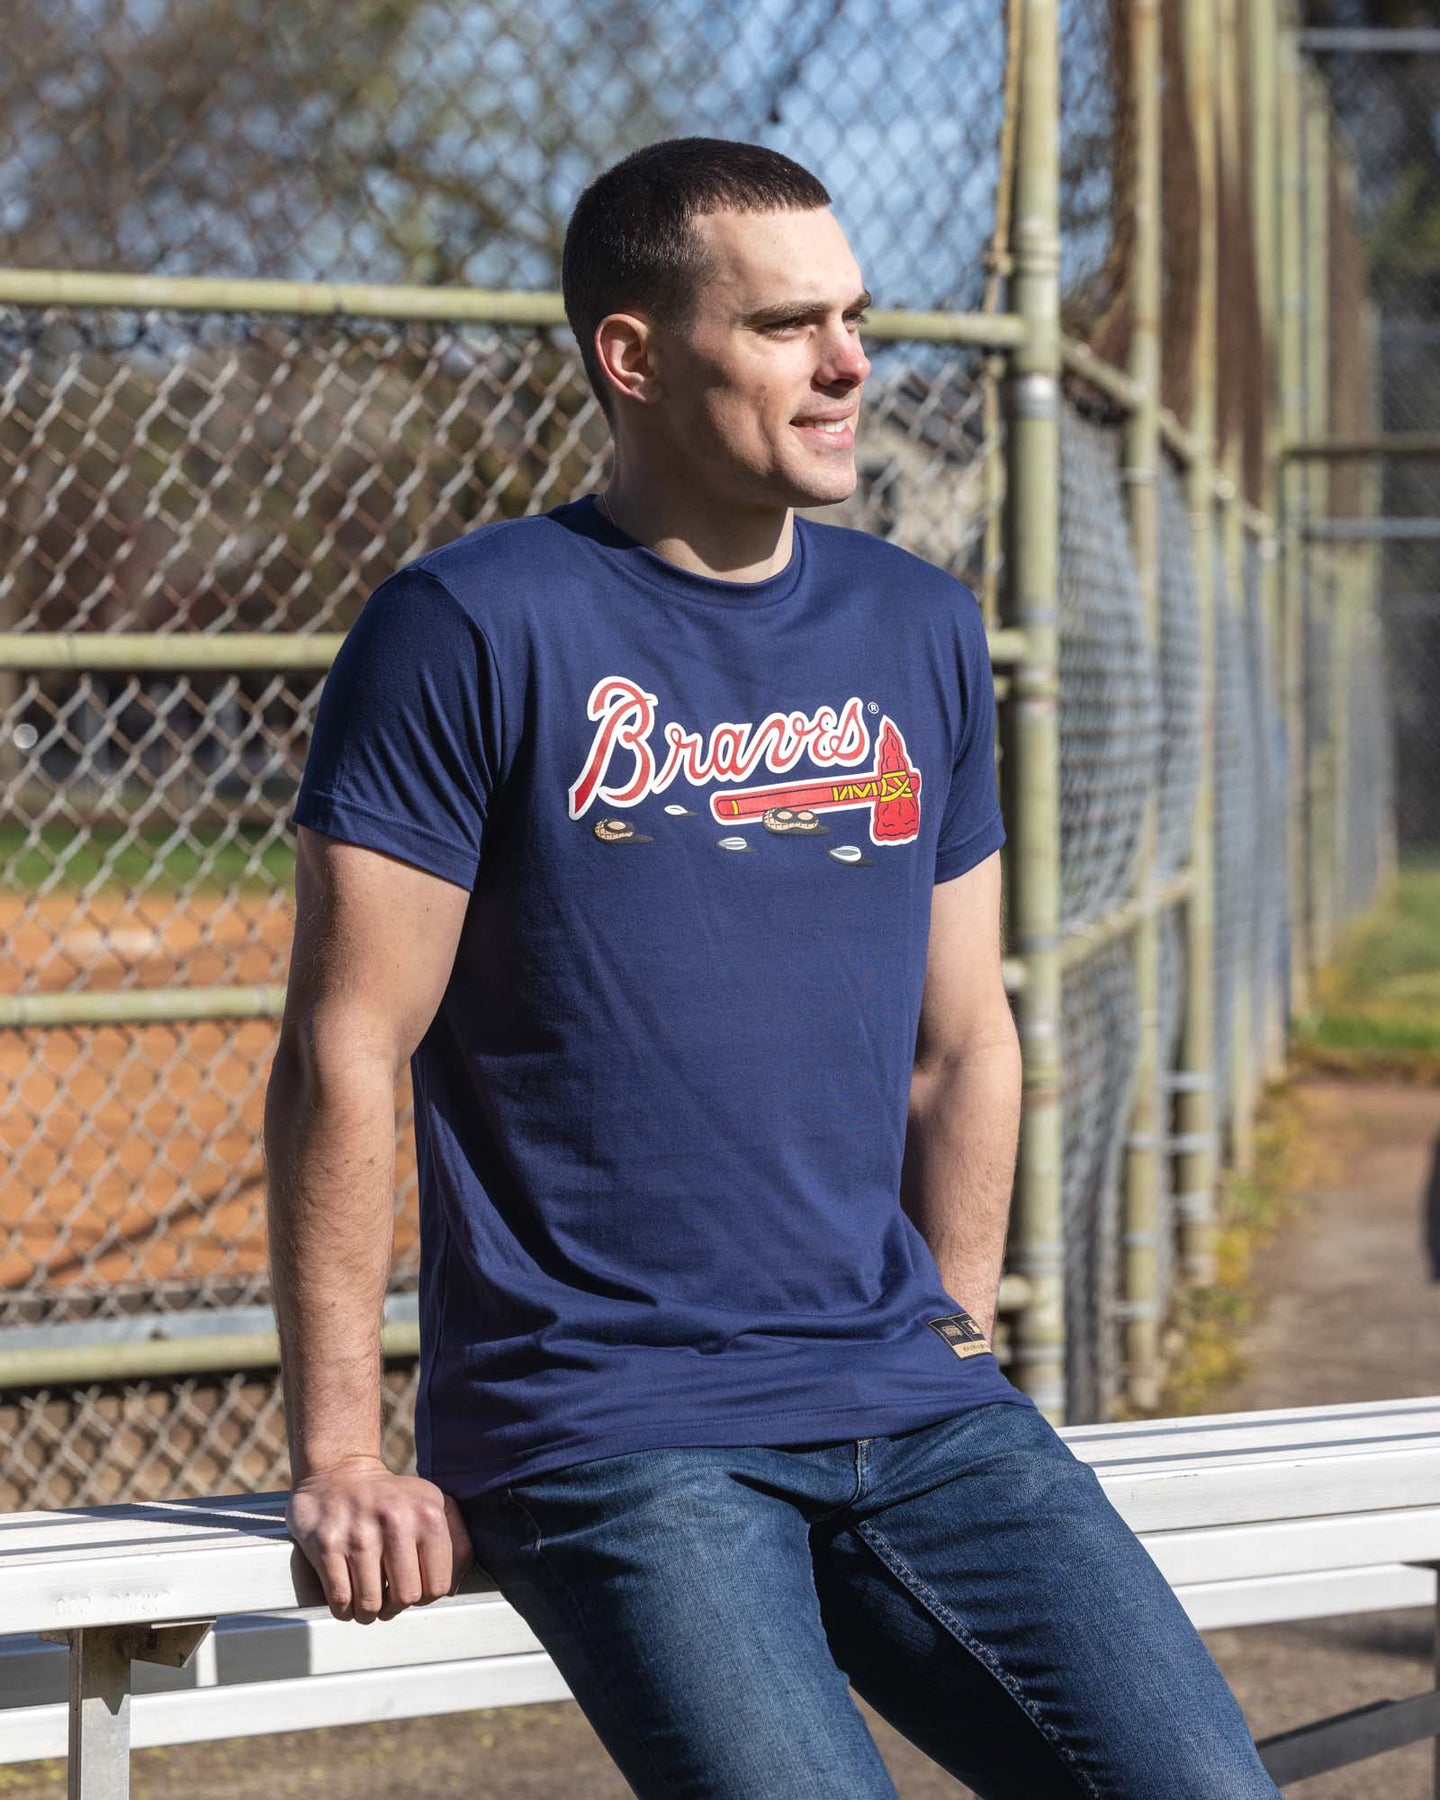 Atlanta Braves Tshirt - T-shirts Low Price